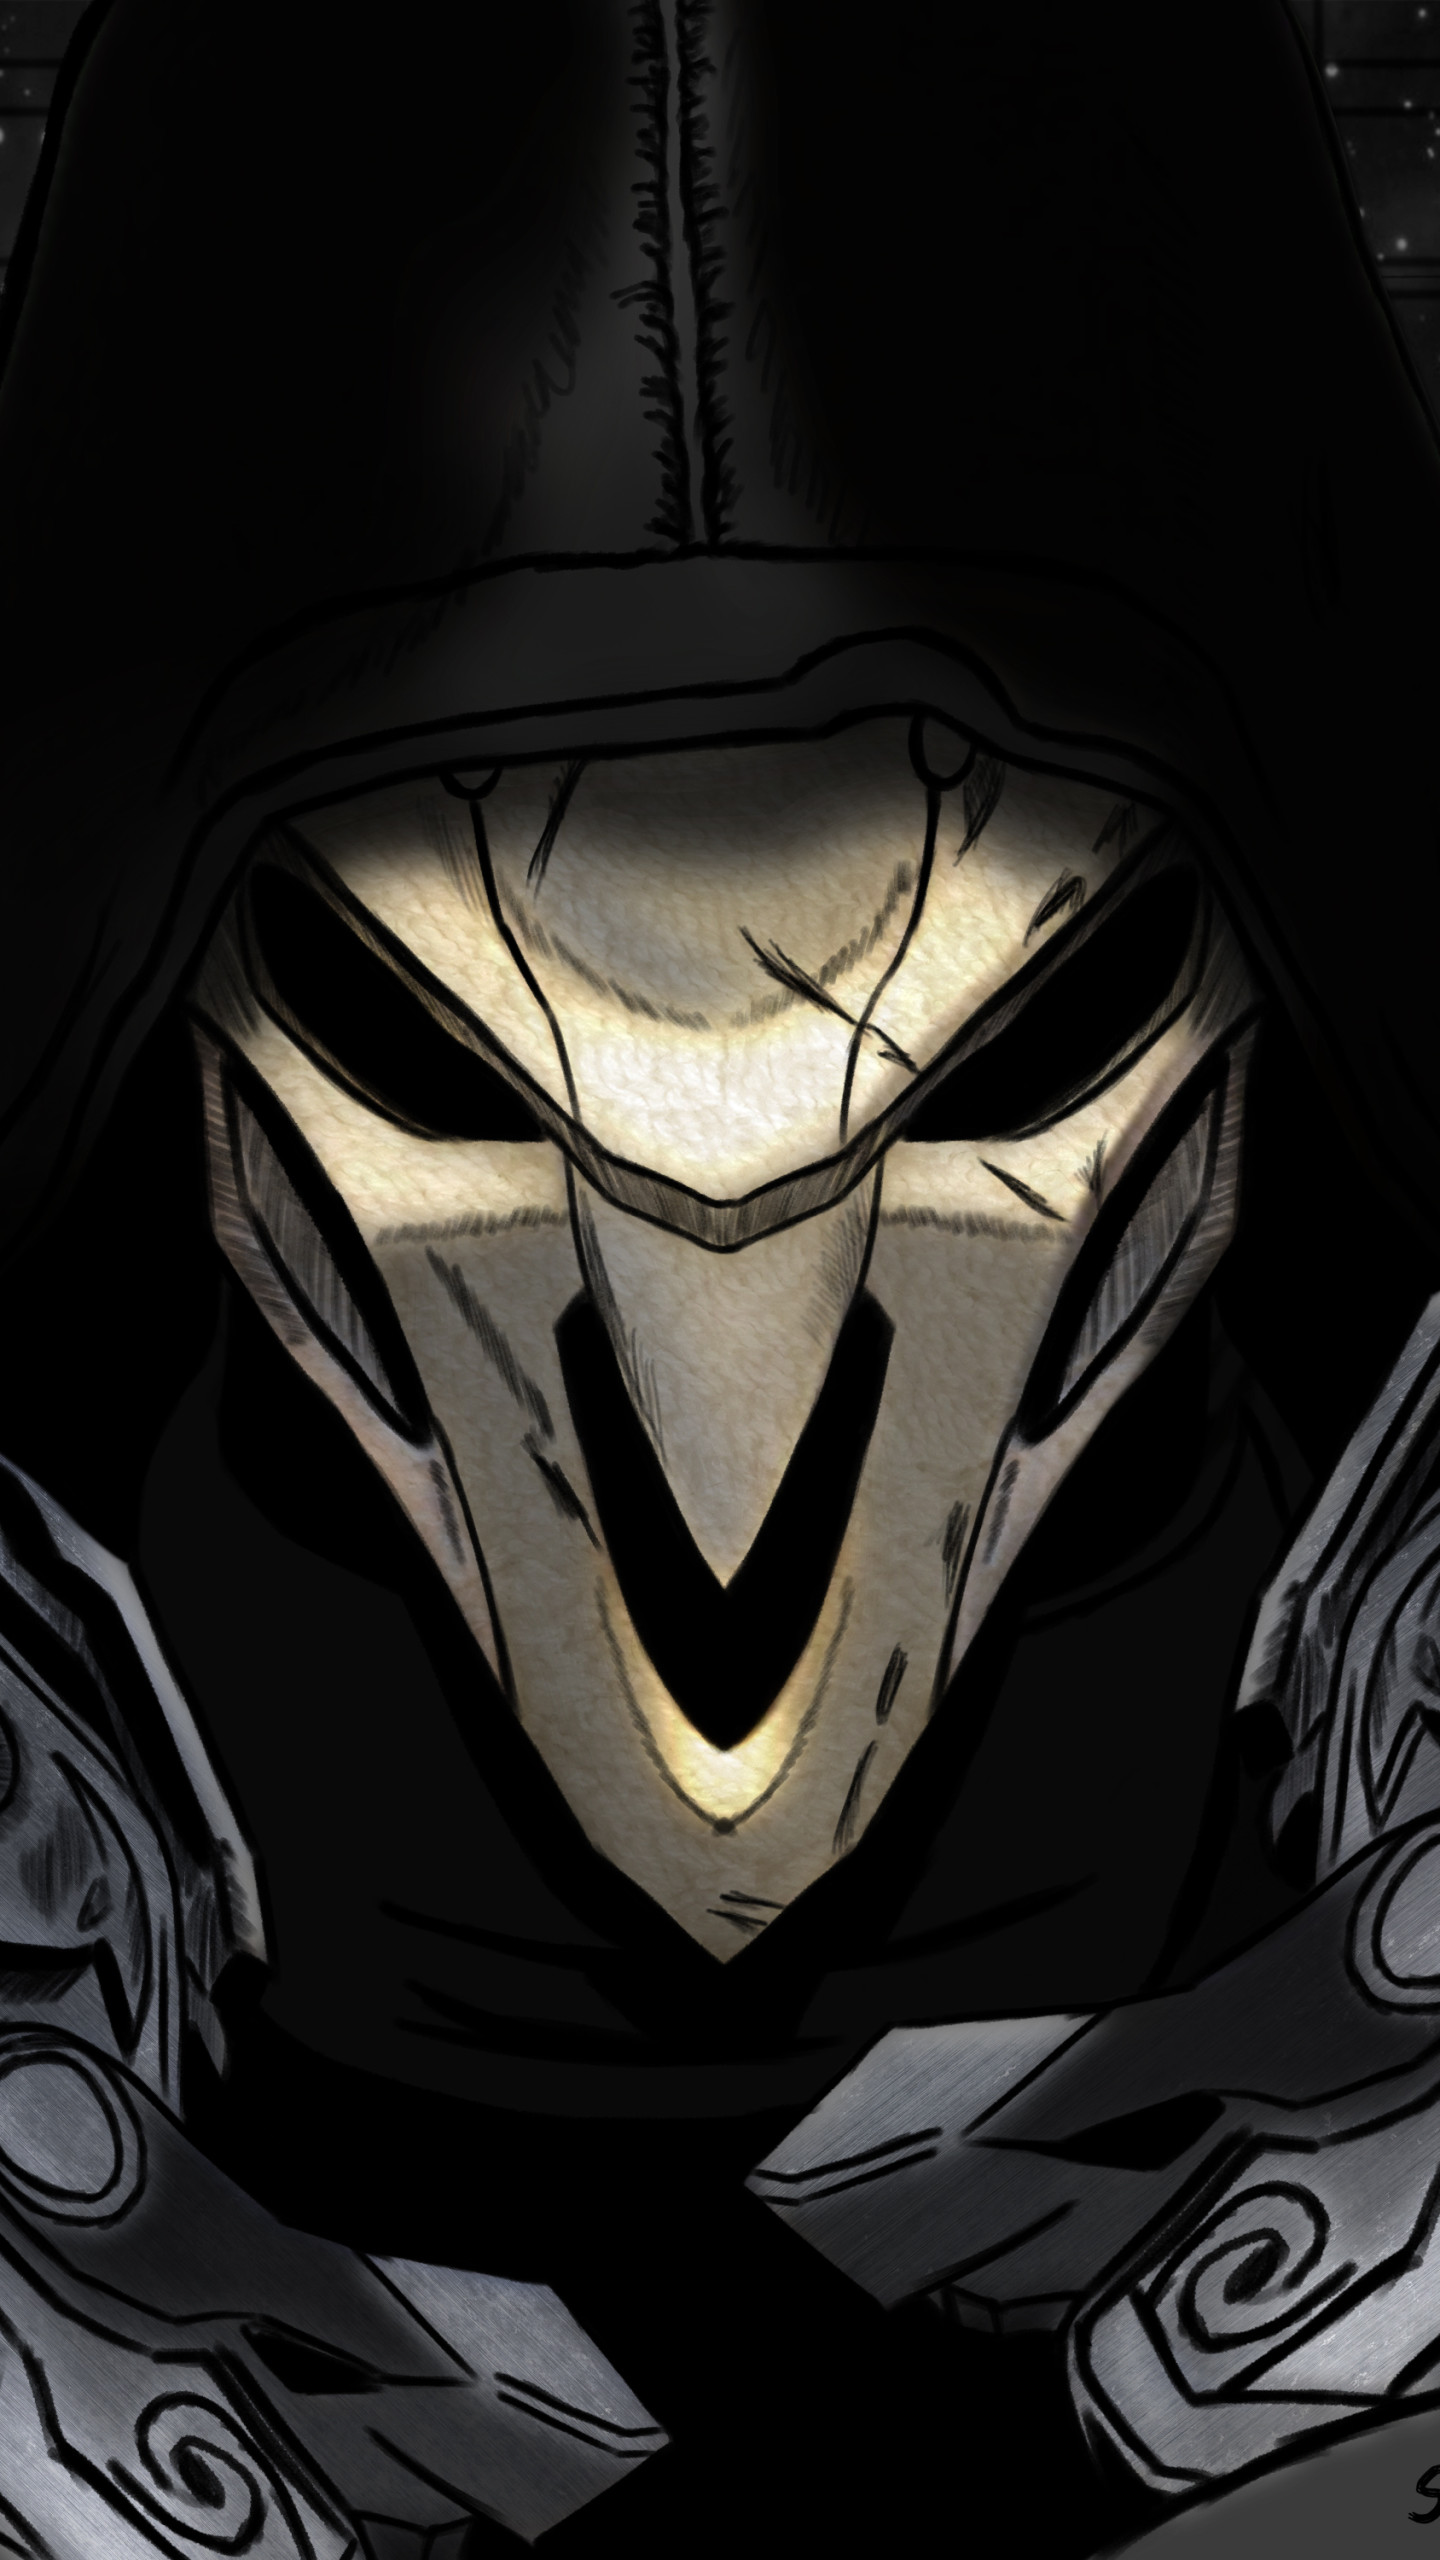 fond d'écran overwatch reaper,homme chauve souris,personnage fictif,anime,oeuvre de cg,illustration